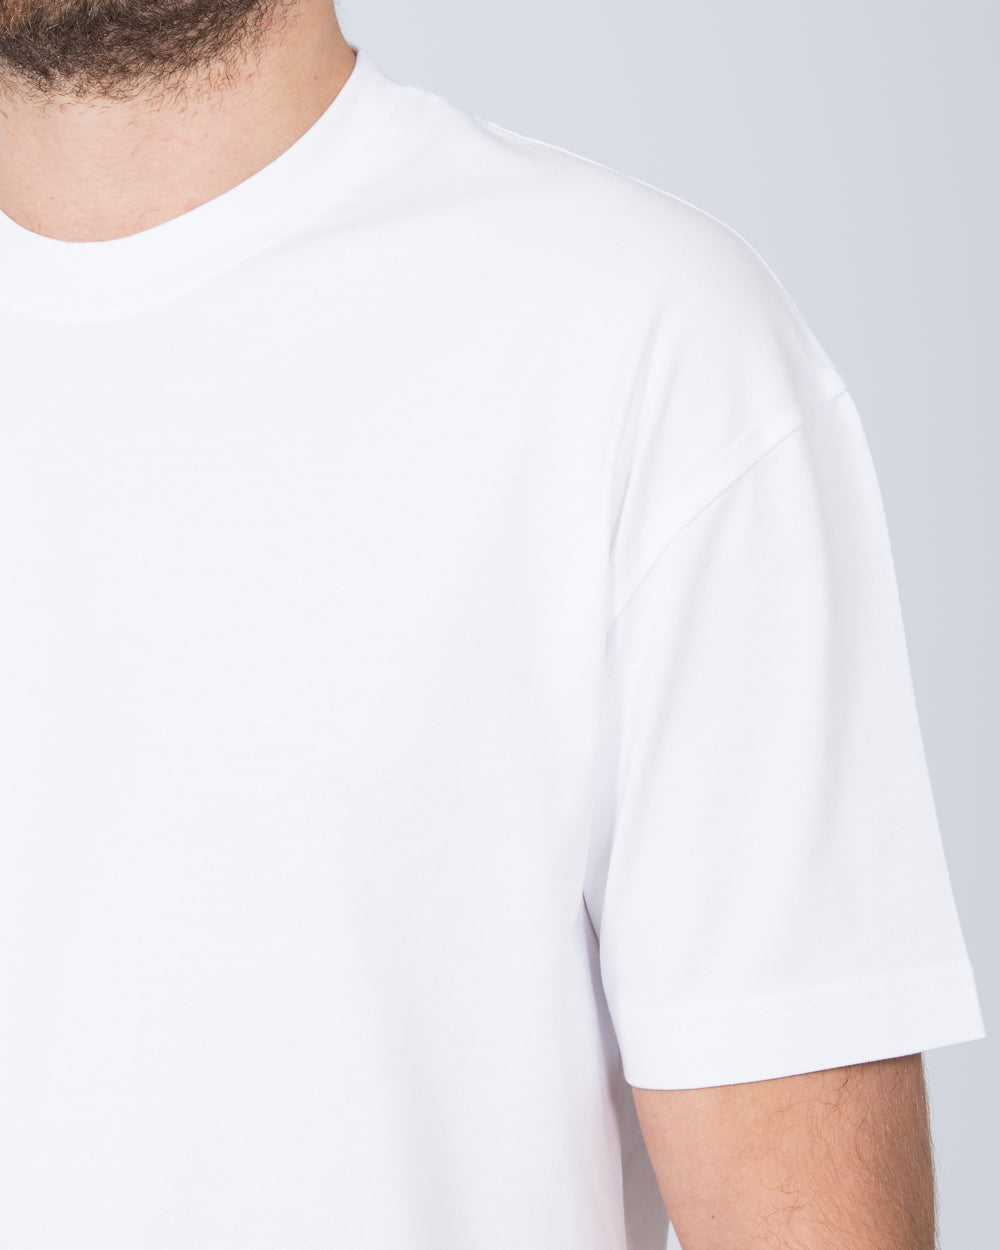 Girav Dallas Tall Oversized T-Shirt (white)